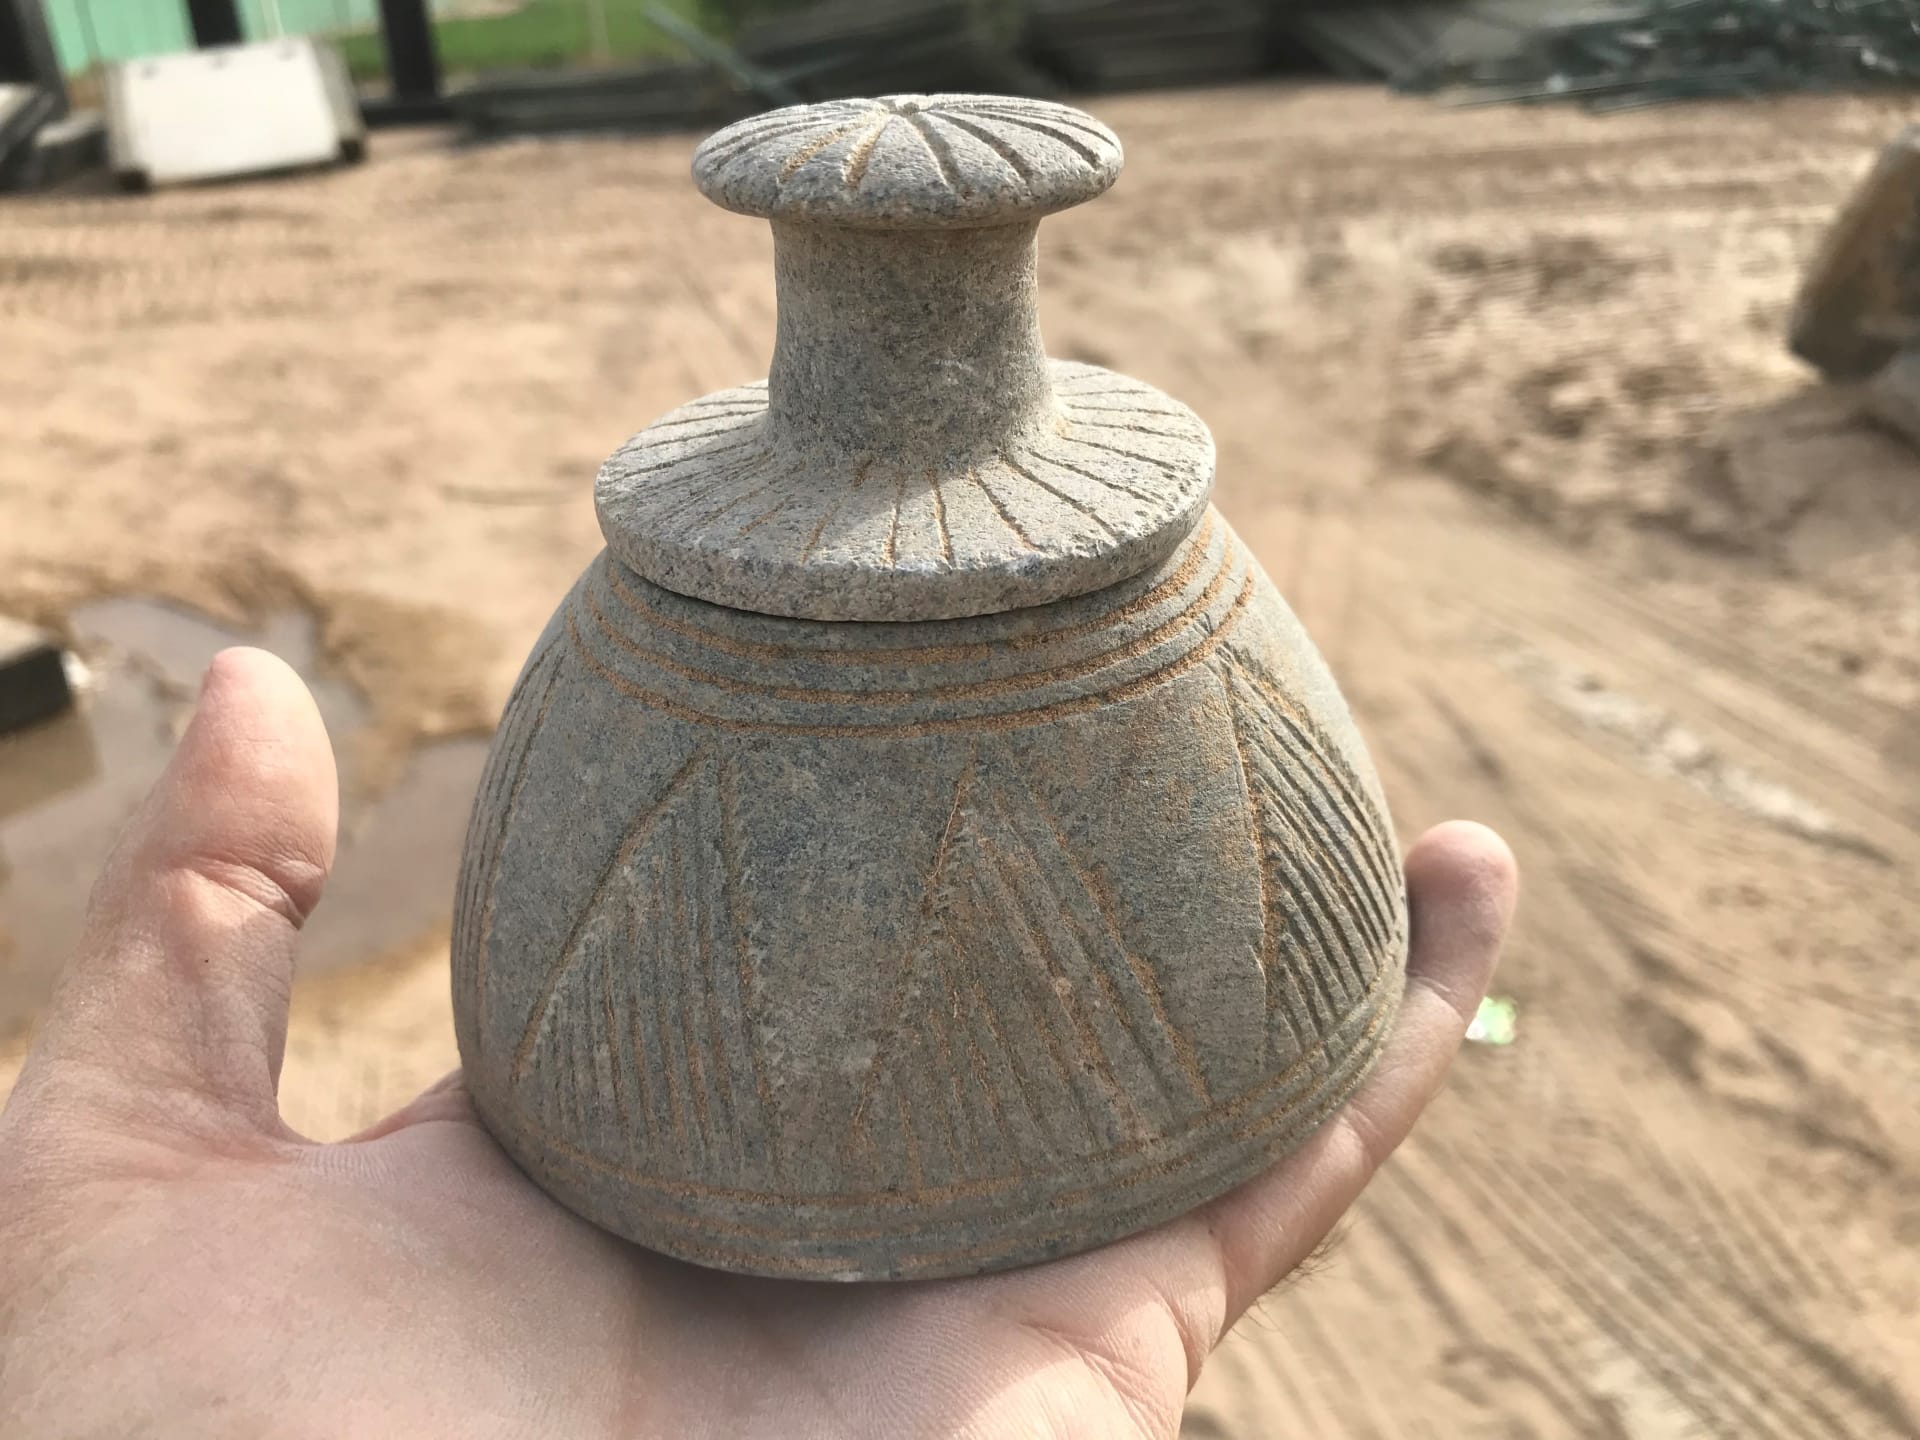 الإعلان عن اكتشافات أثرية تاريخية جديدة في أبوظبي